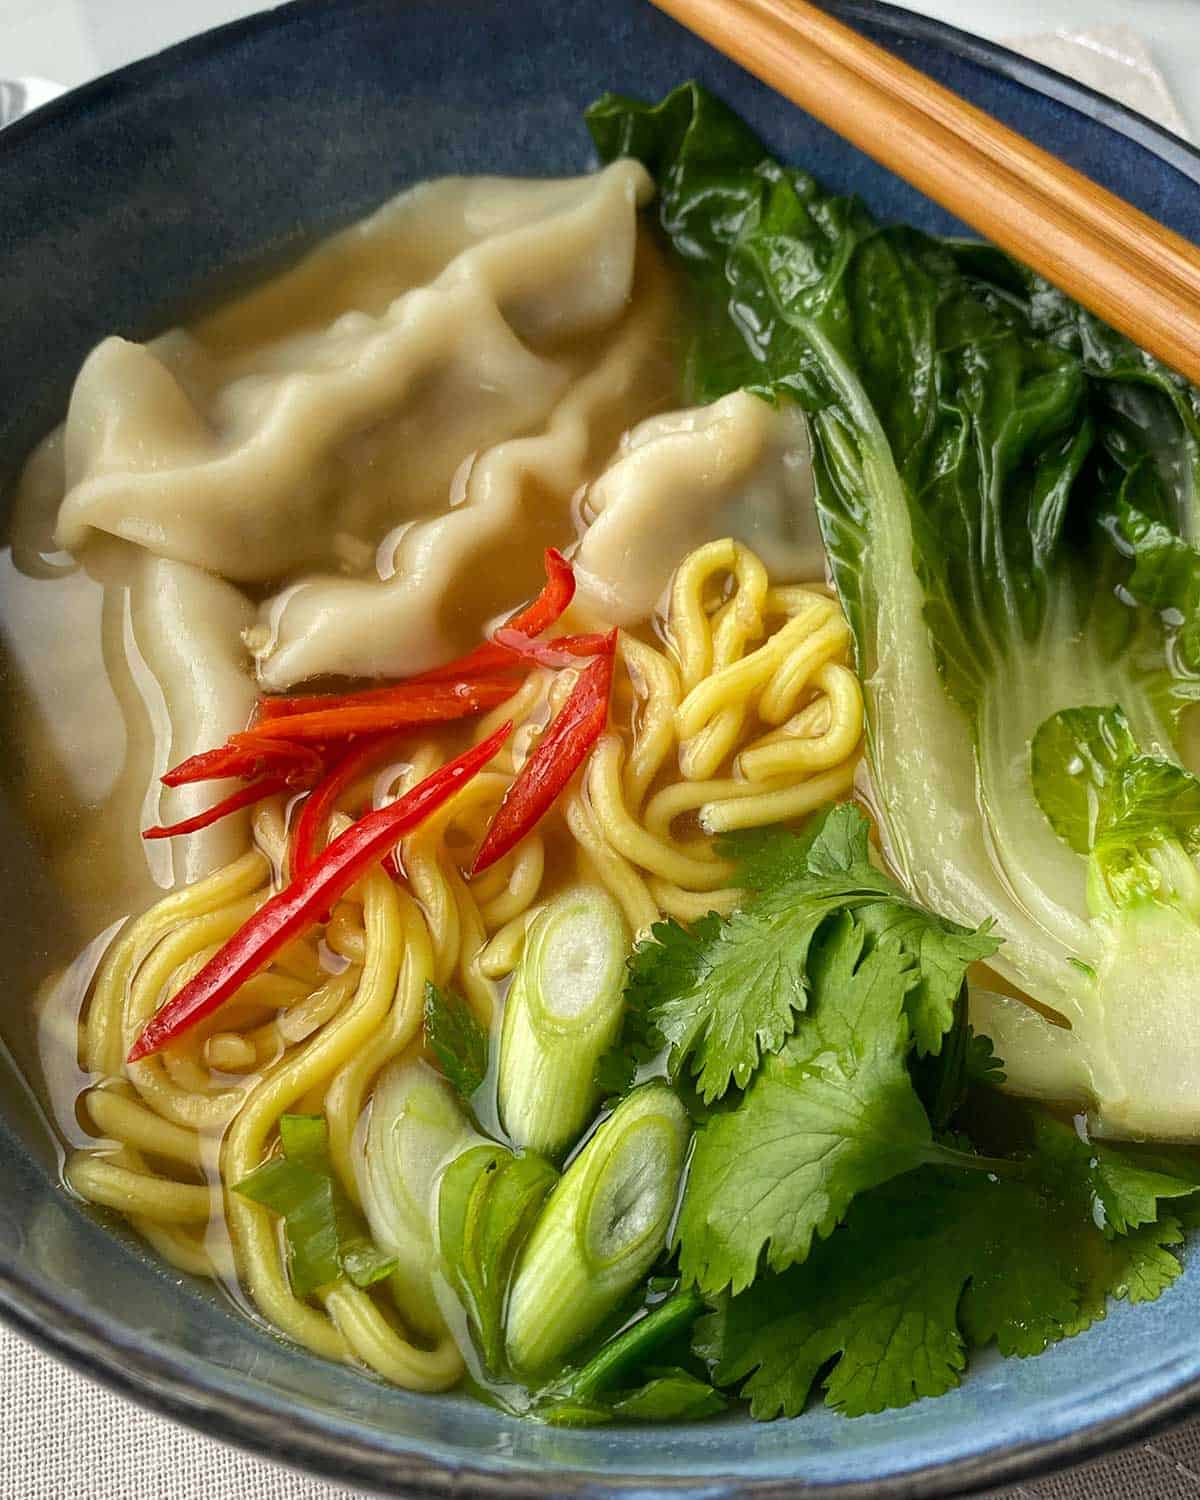 A close up of Dumpling Noodle Soup in a blue bowl.